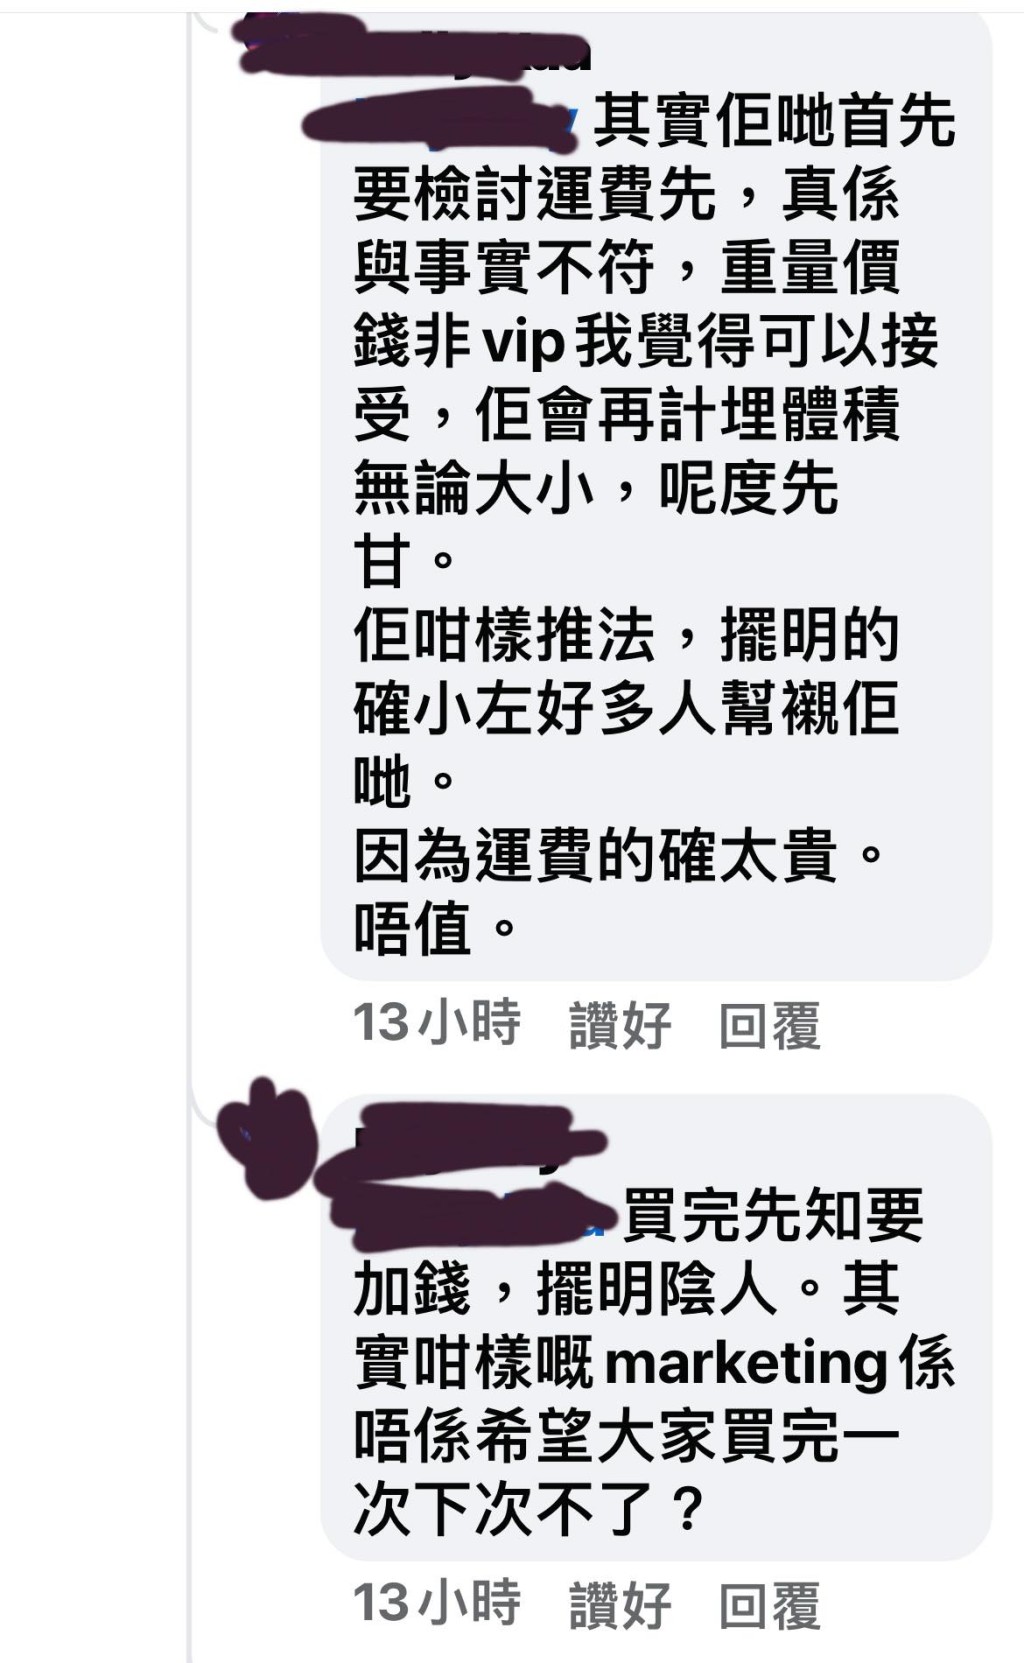 在网上投诉的事主上载多张投诉HKTVmall留言的截图（图片来源：Facebook）